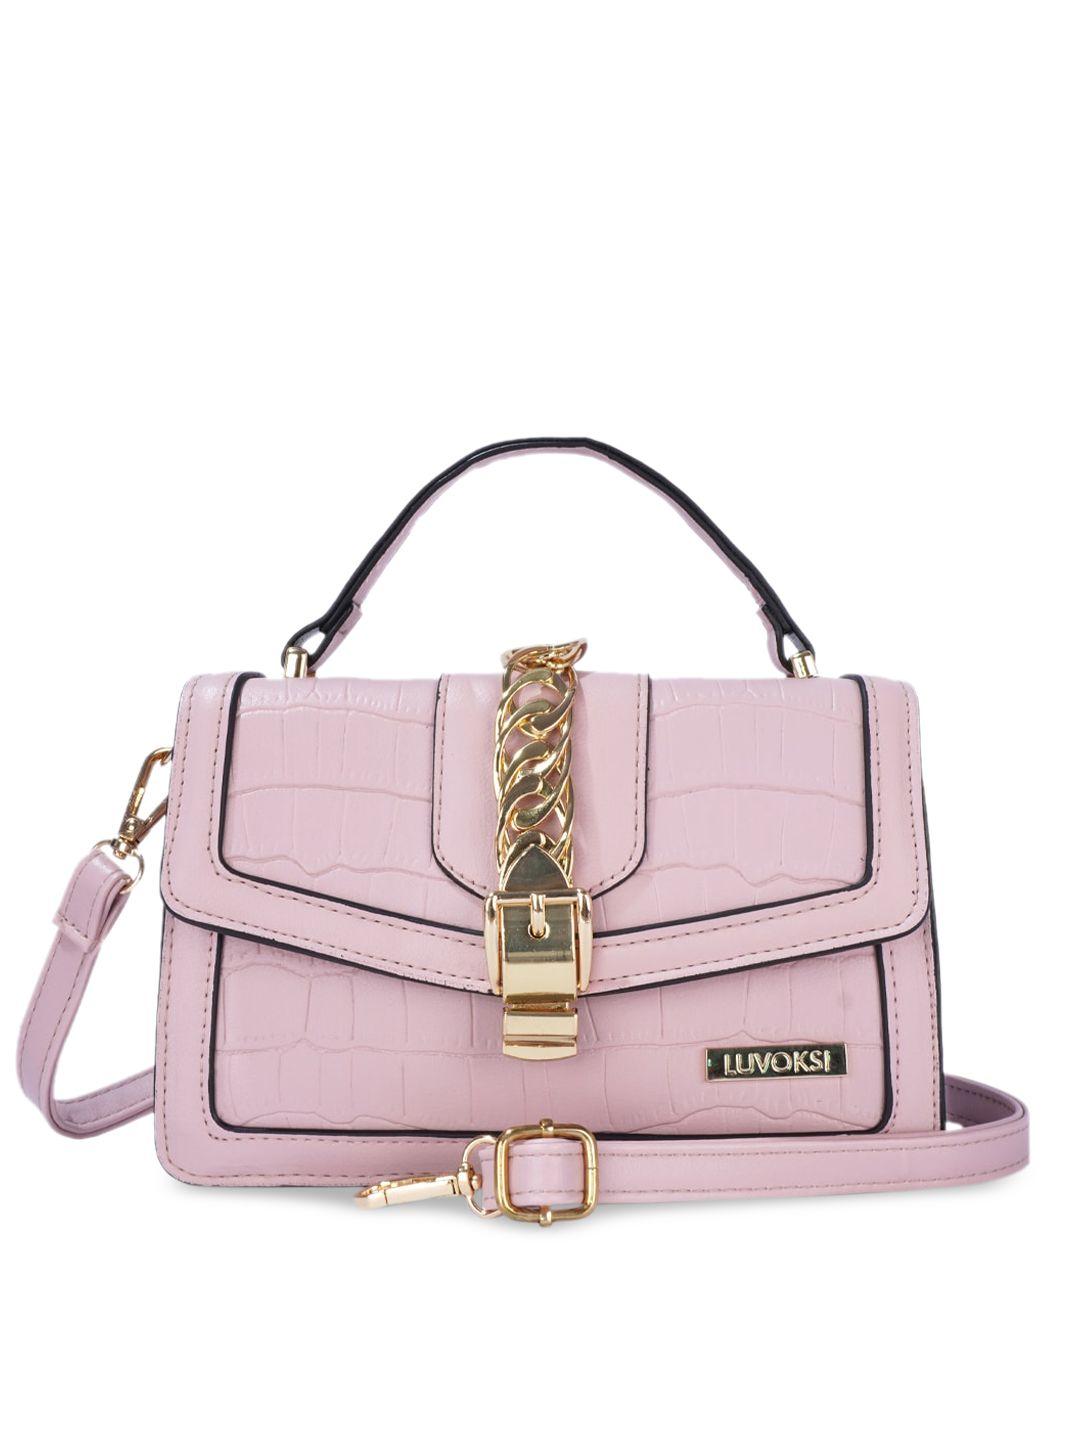 luvoksi pink textured structured satchel